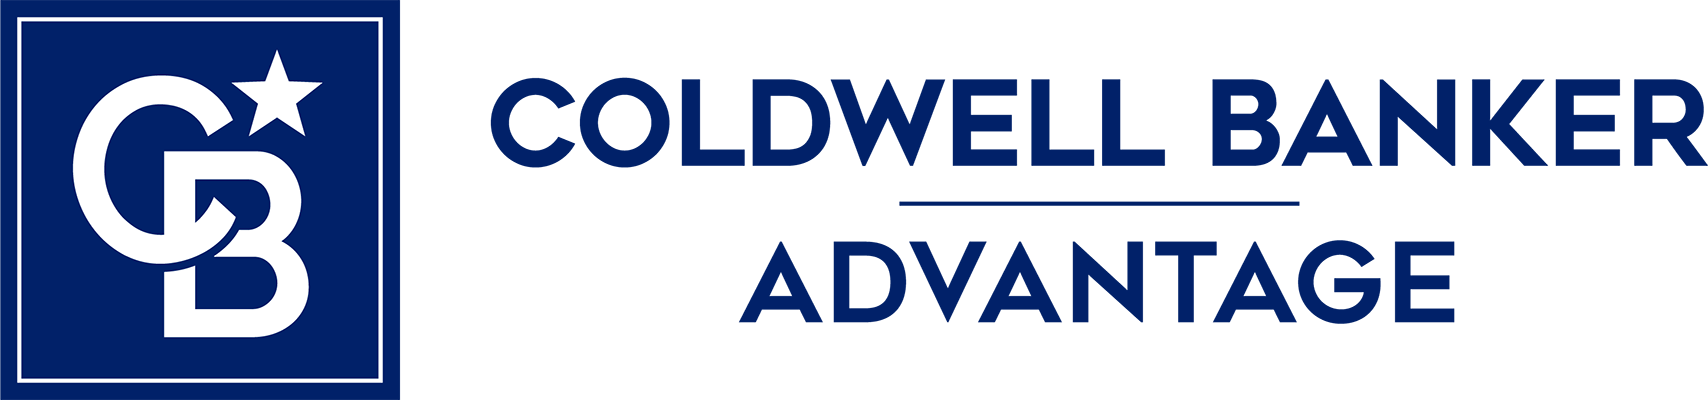 Tina Hilker - Coldwell Banker Advantage Logo